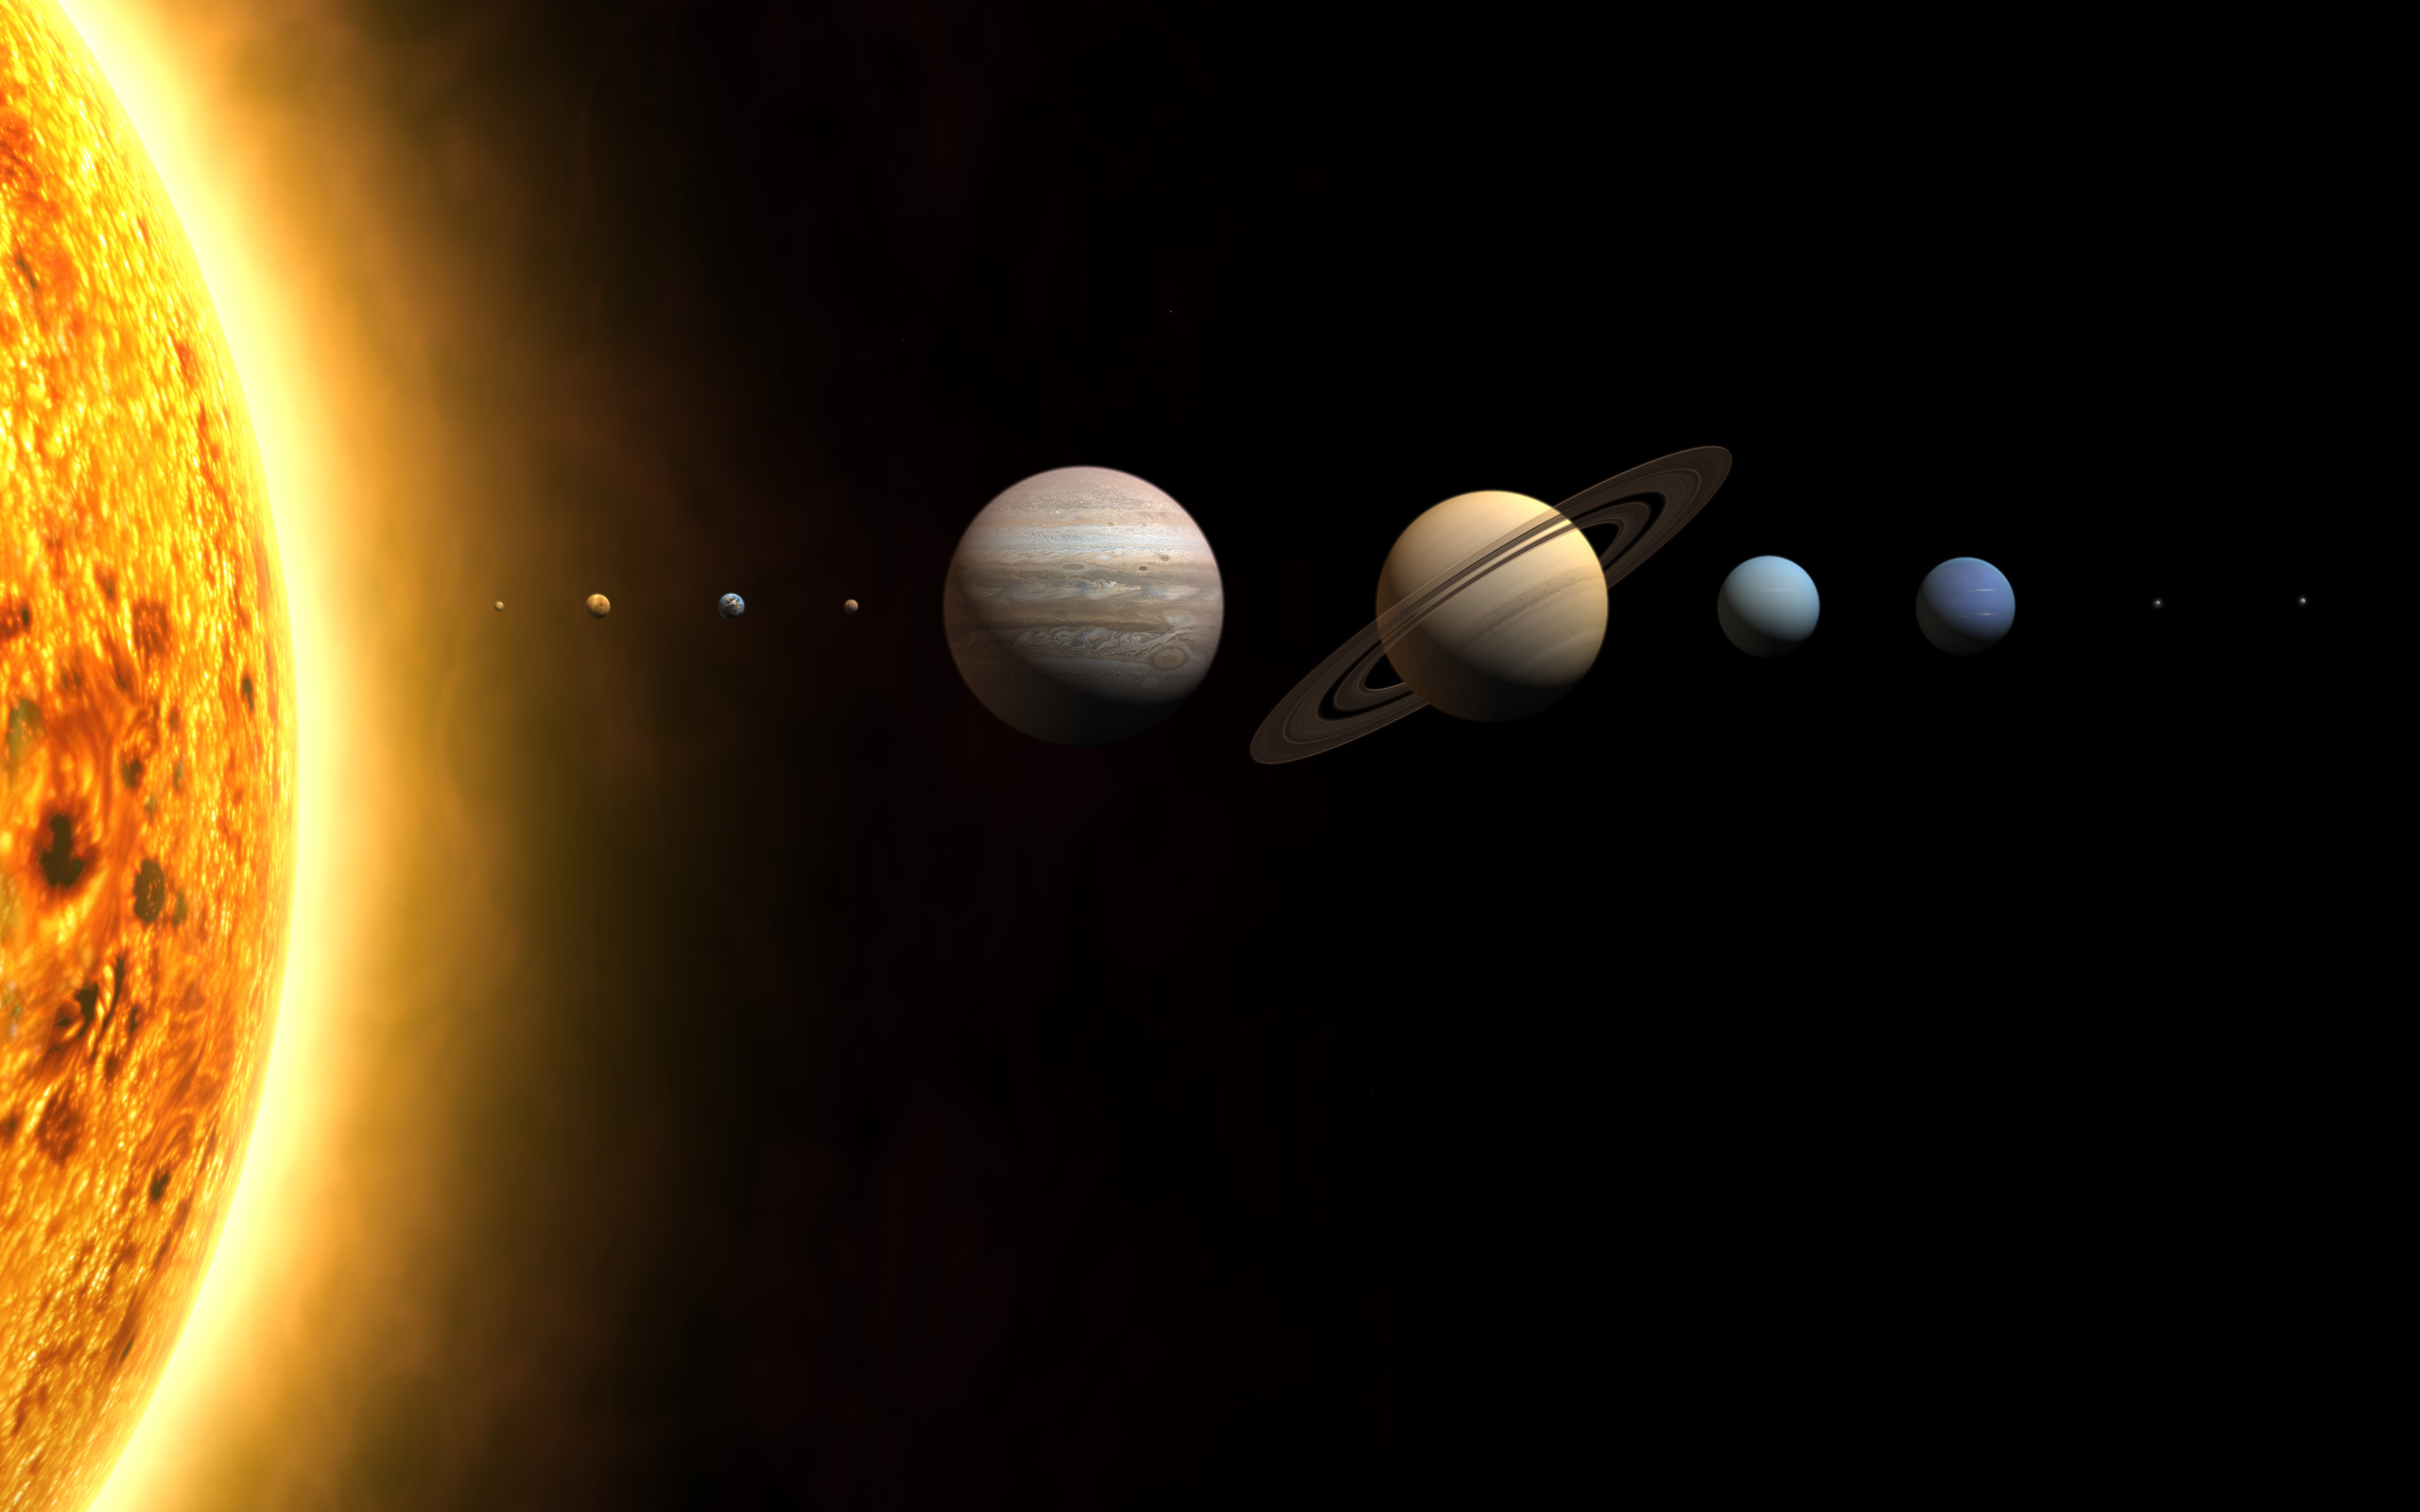 Расположение планет солнечной системы